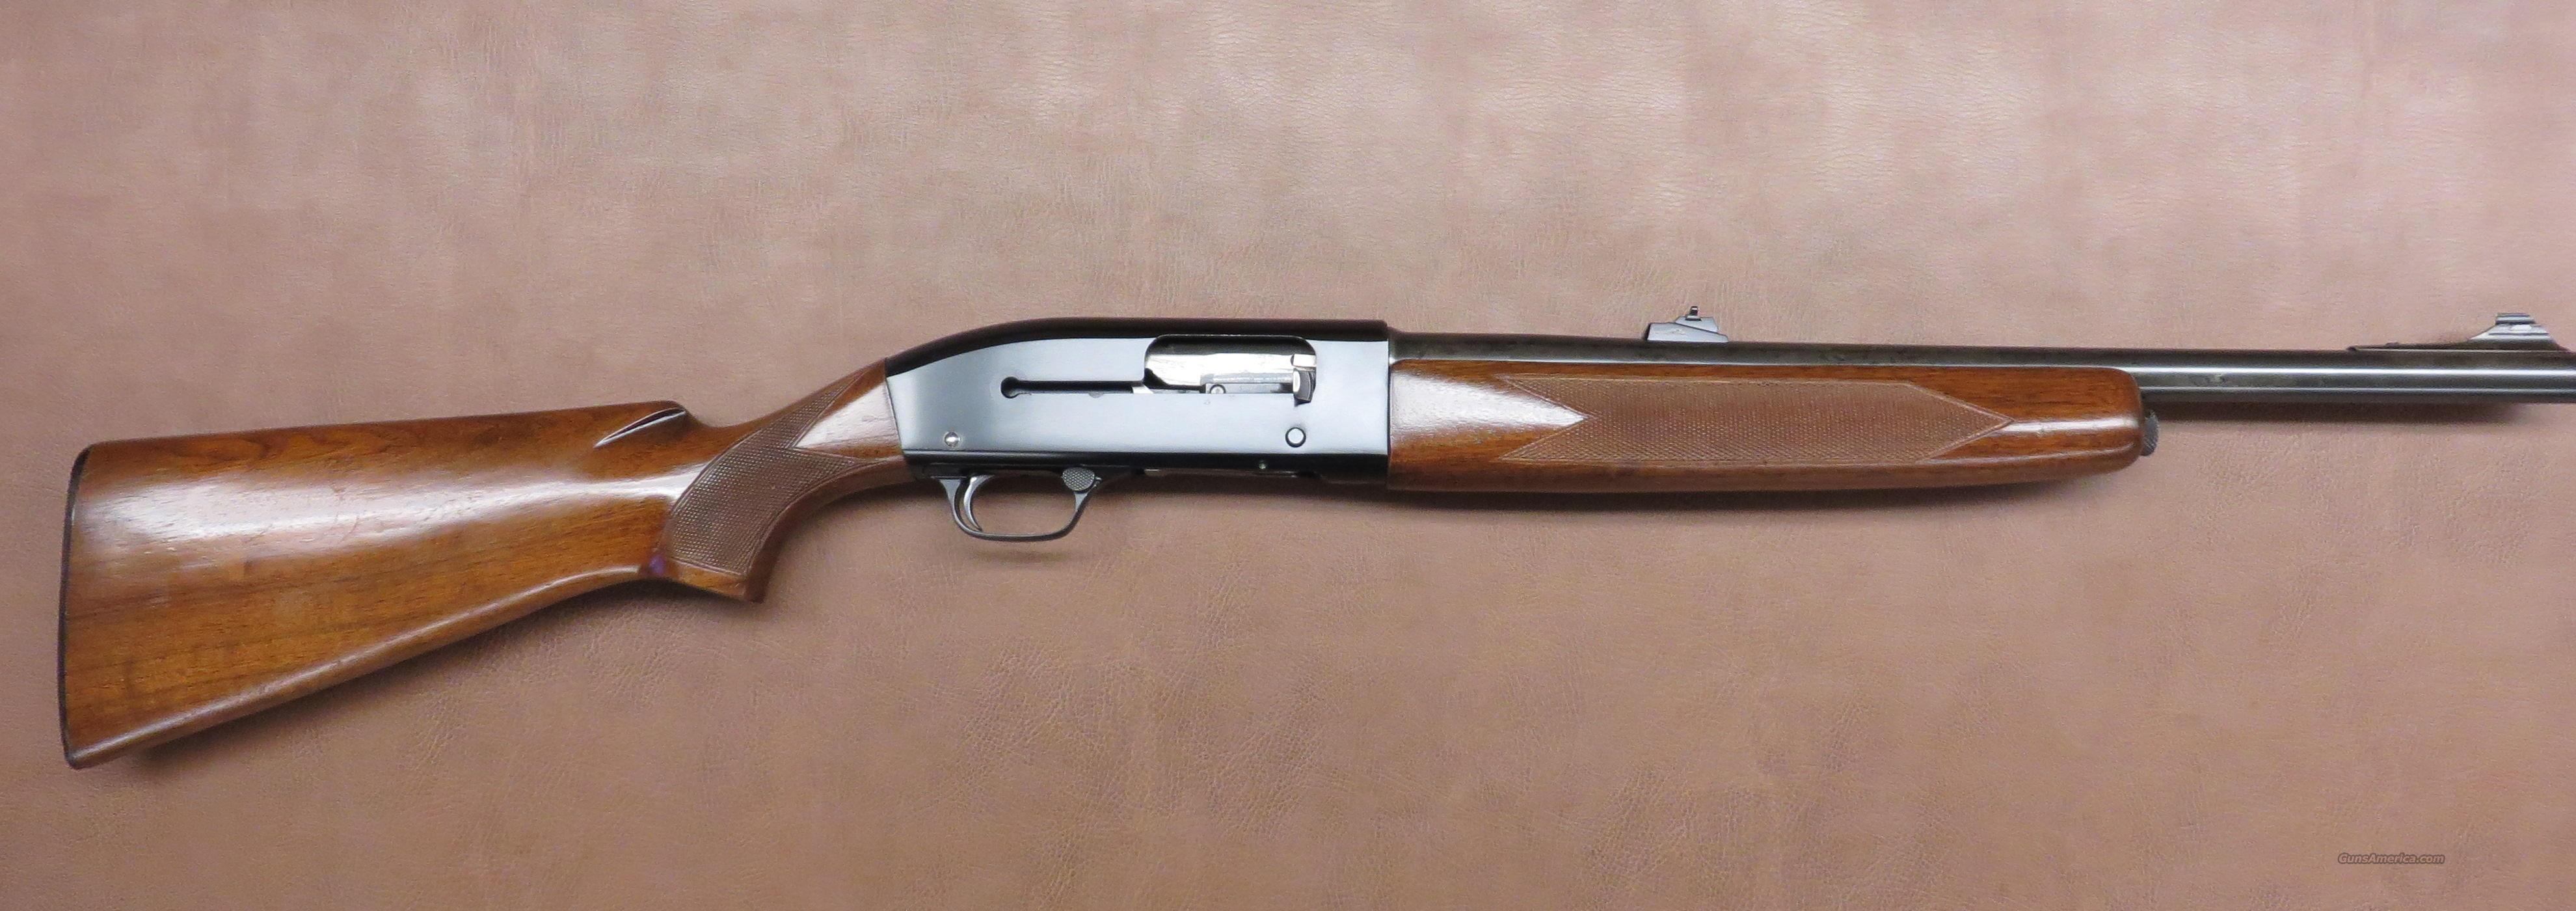 winchester model 50 shotgun serial numbers